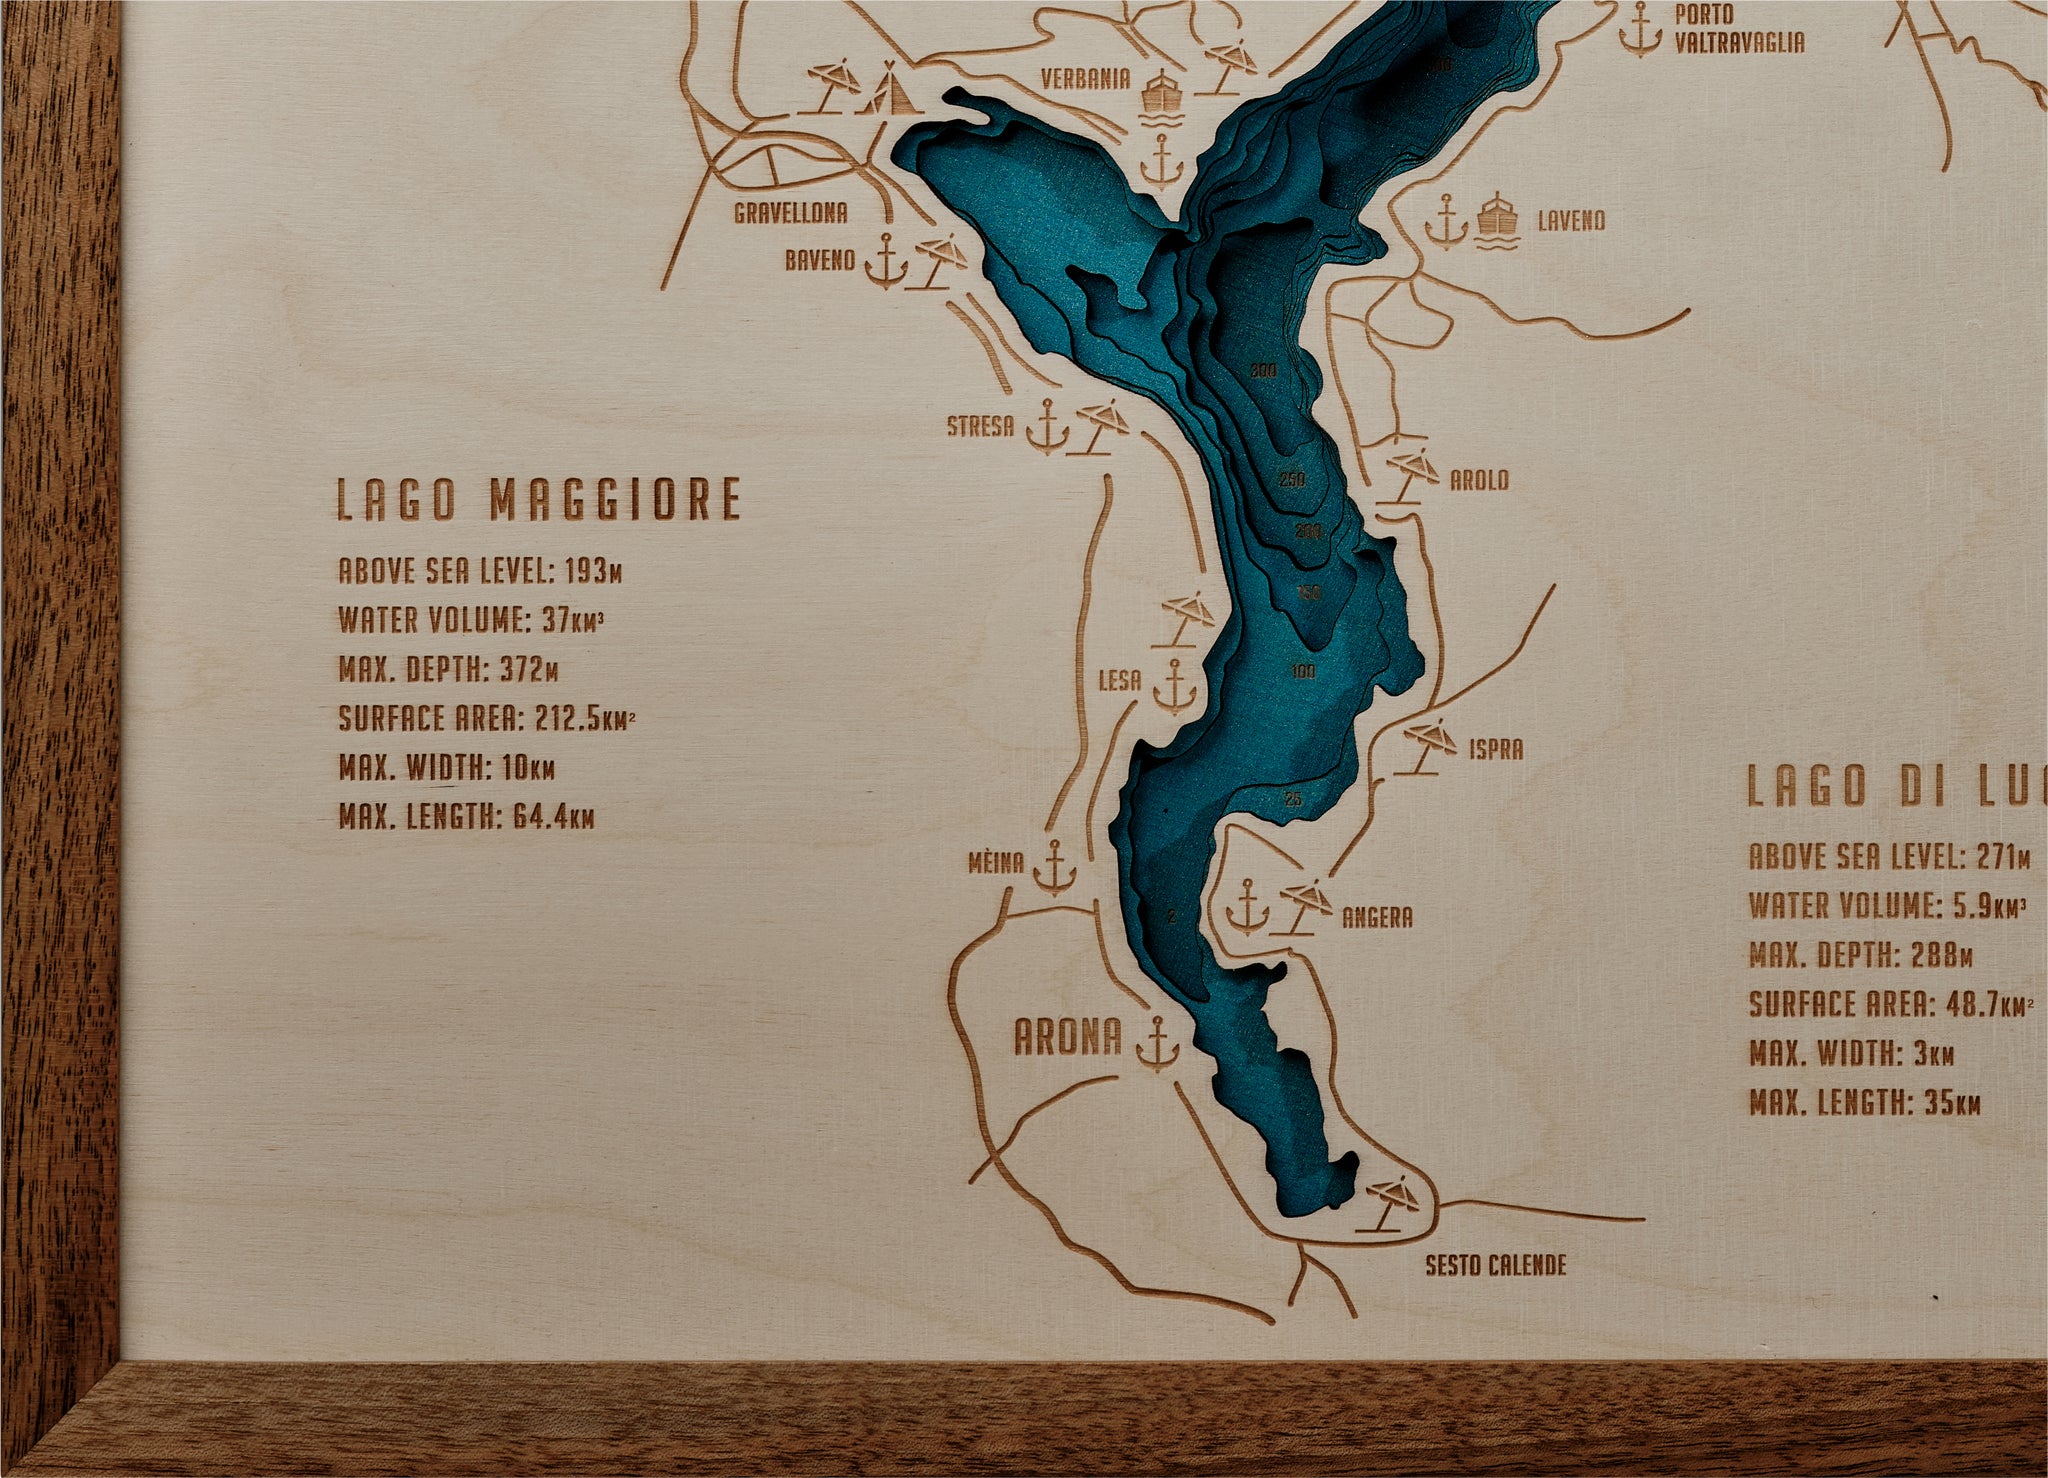 Lago Maggiore & Lago di Lugano